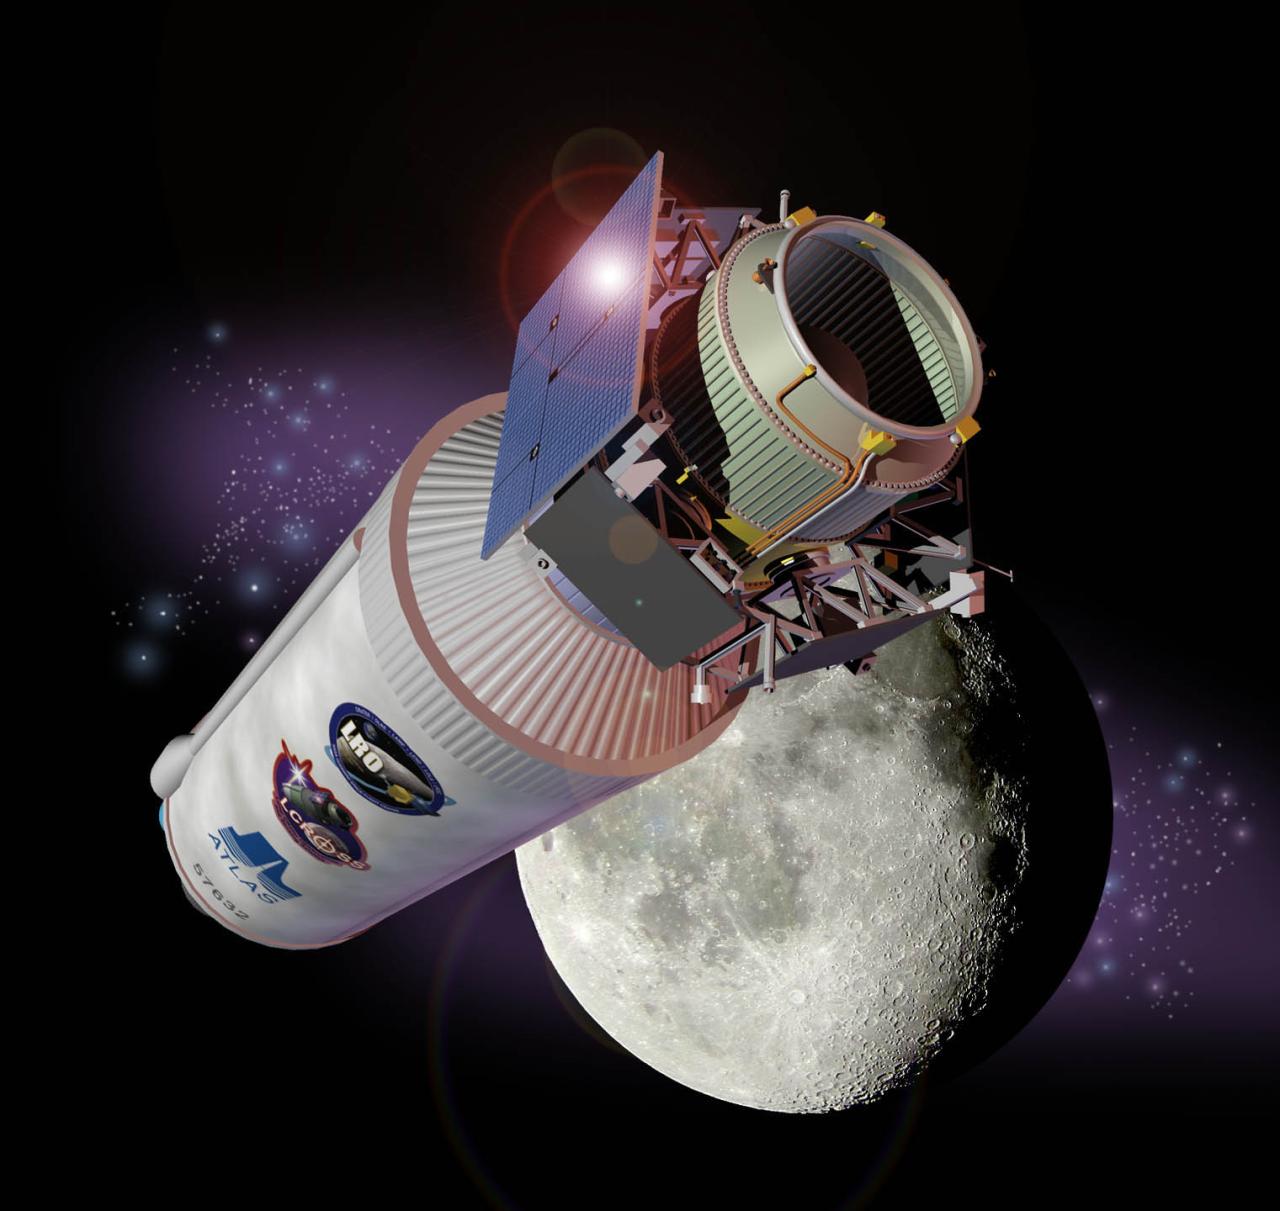 La nave espacial LCROSS de la NASA se estrelló intencionalmente en la luna en 2009